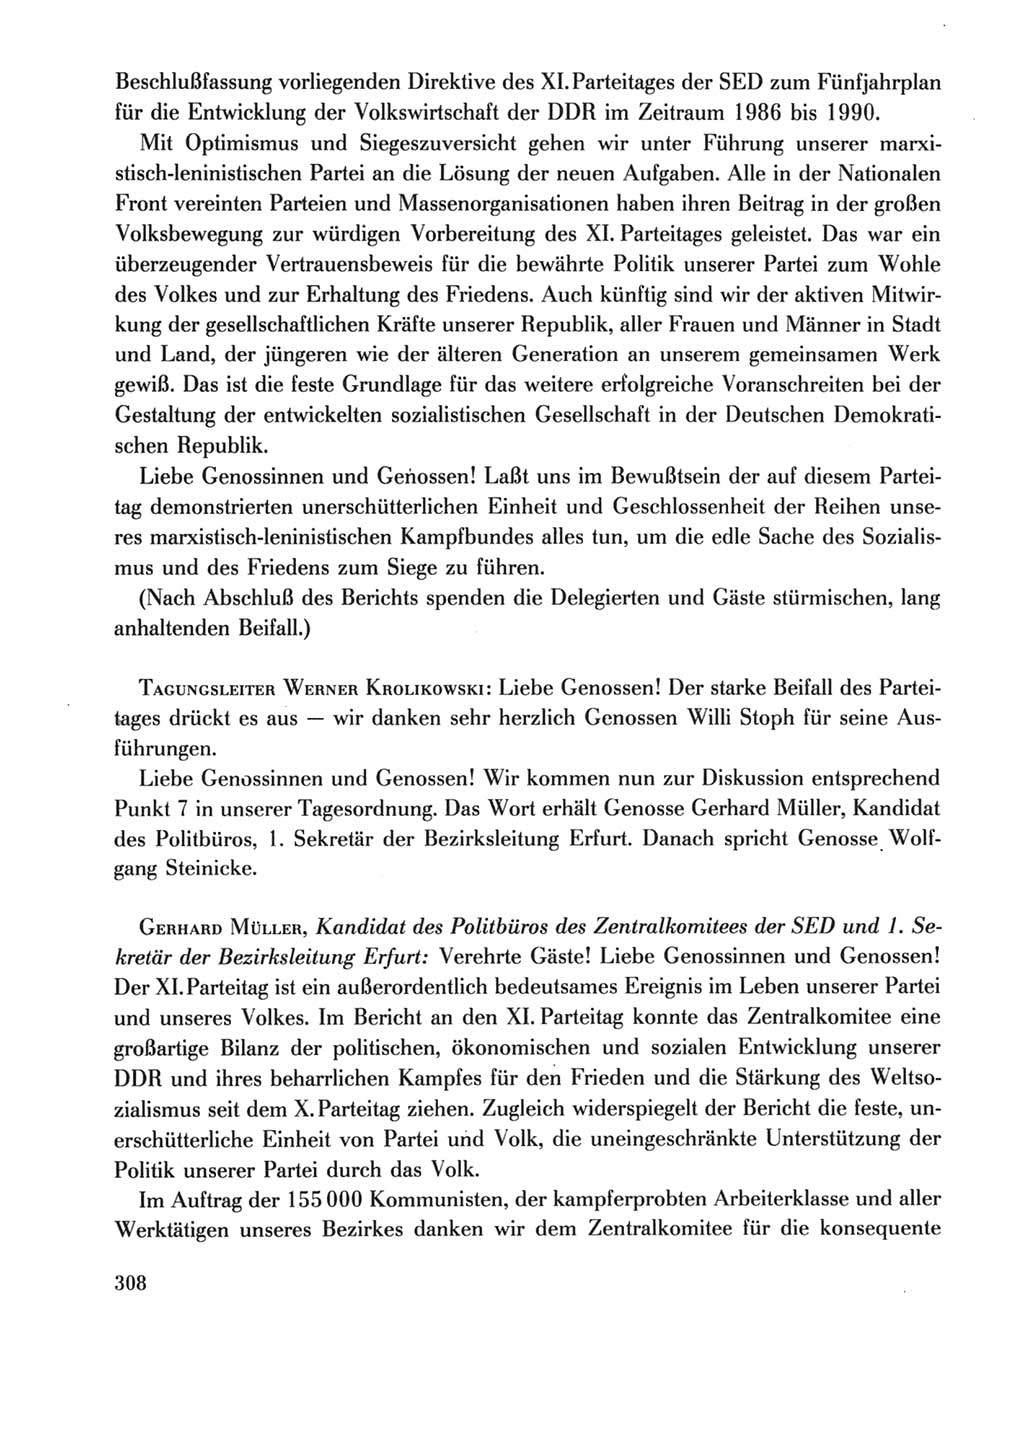 Protokoll der Verhandlungen des Ⅺ. Parteitages der Sozialistischen Einheitspartei Deutschlands (SED) [Deutsche Demokratische Republik (DDR)] 1986, Seite 308